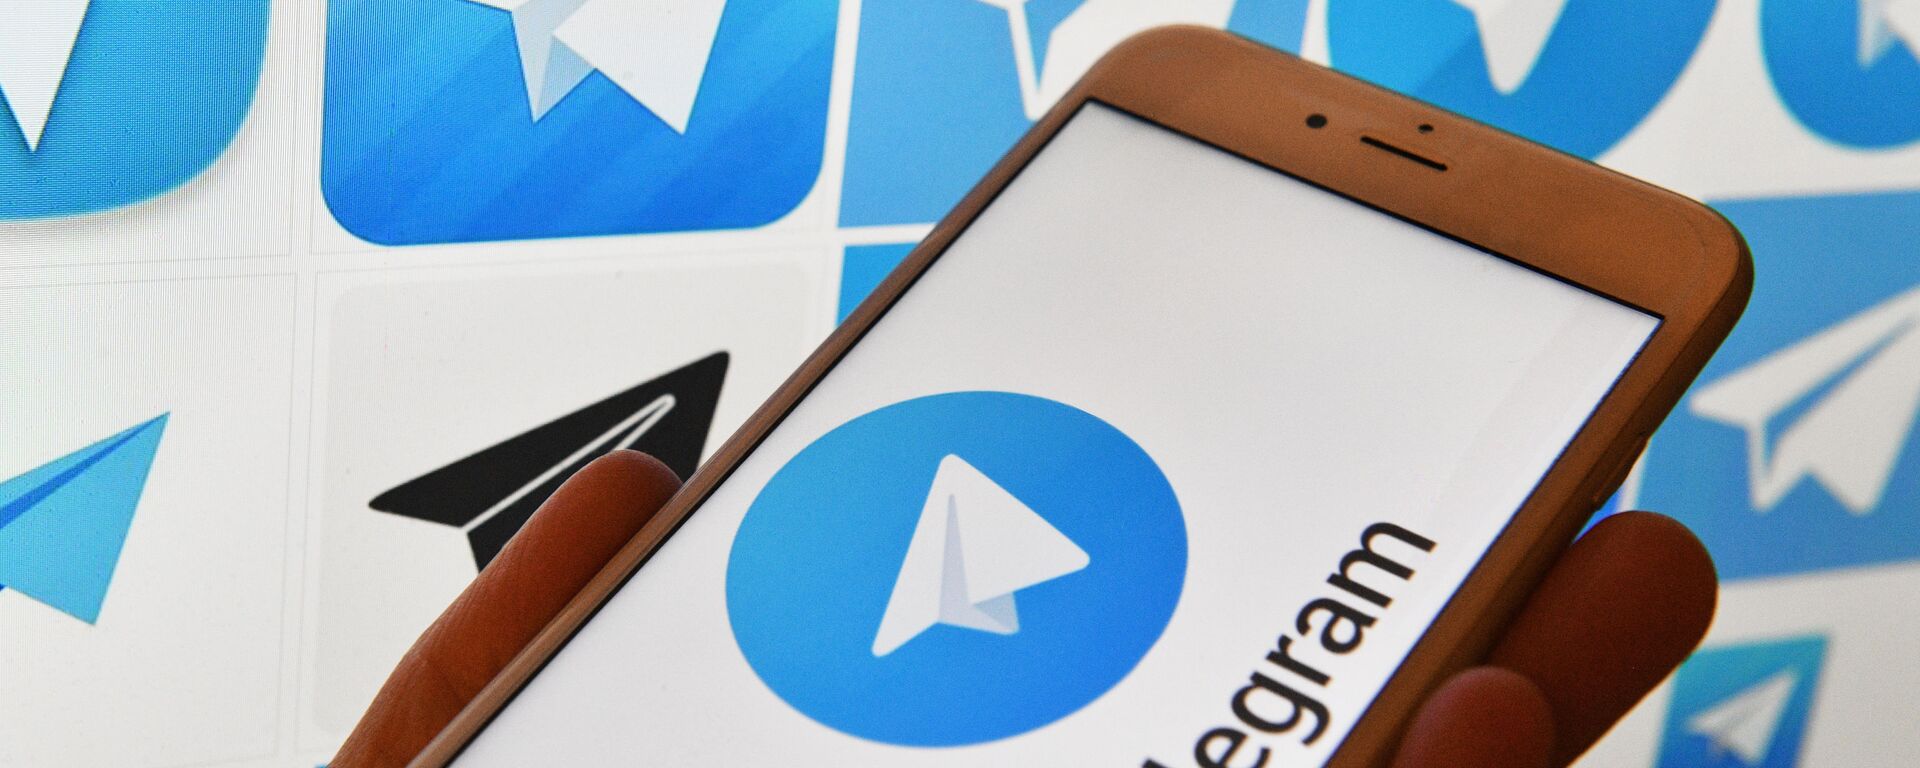 Логотип мессенджера Telegram на экранах смартфона и компьютера - Sputnik Ўзбекистон, 1920, 03.11.2021